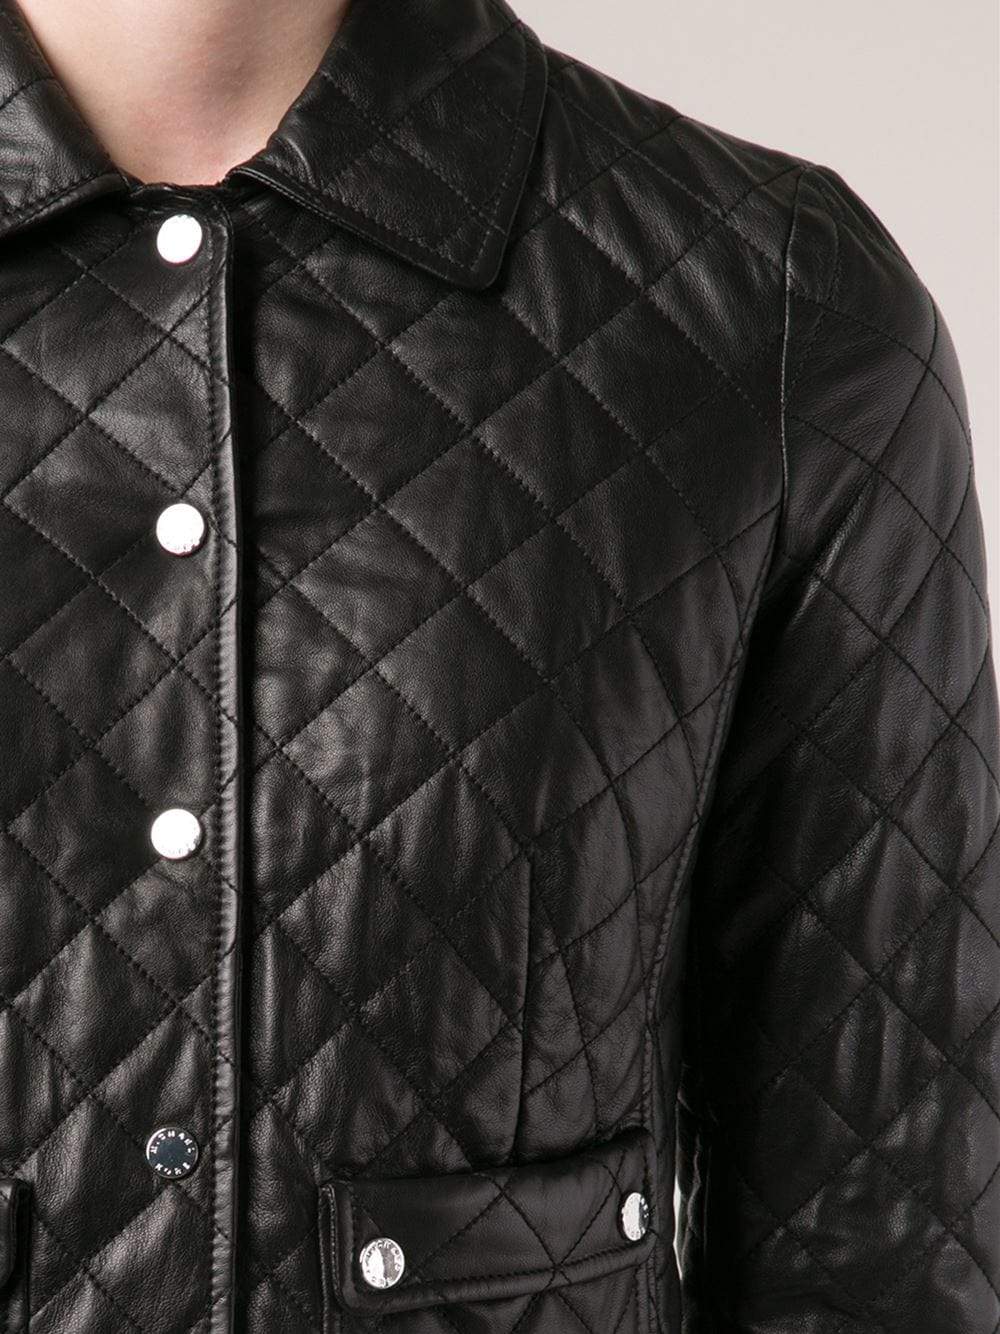 Quilted Leather Jacket CLOTHINGJACKETMISC MICHAEL KORS   